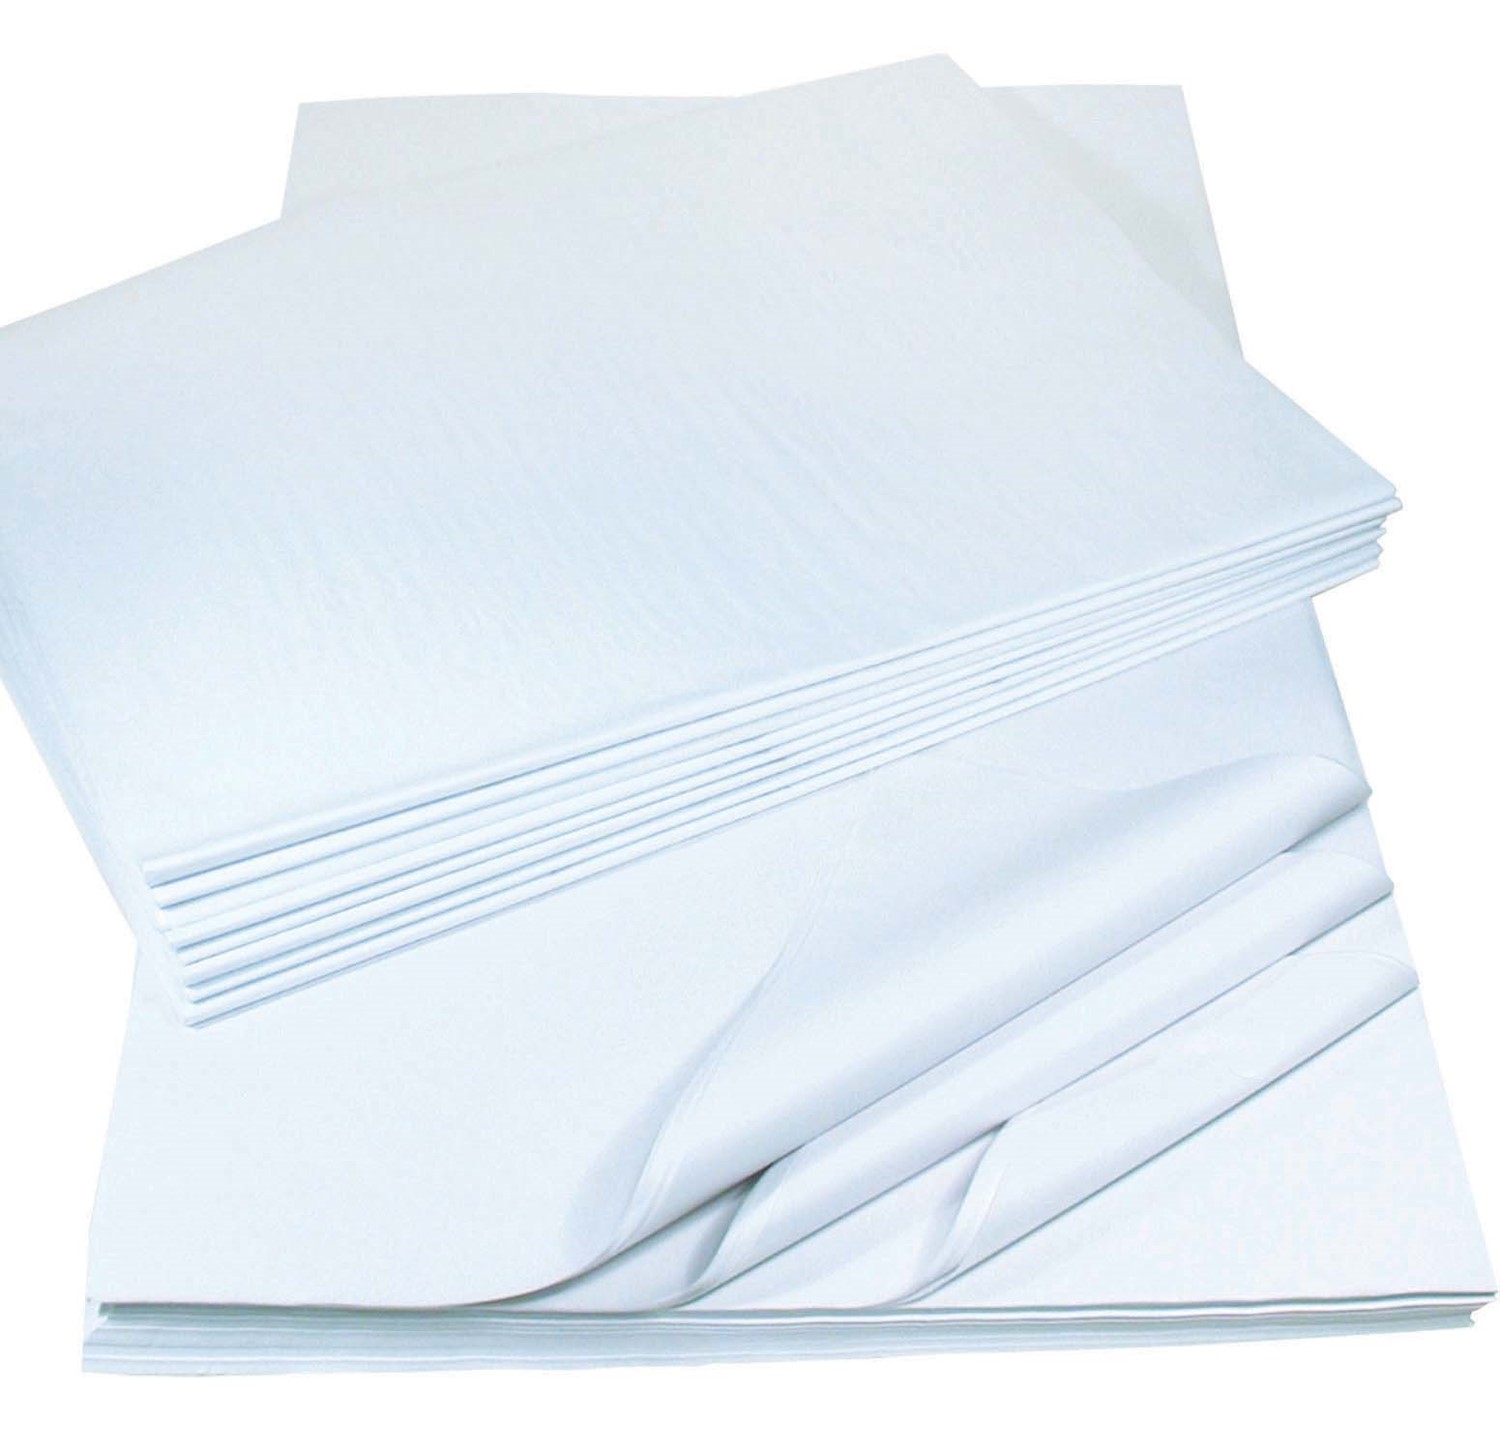 White Tissue Paper Sheets, 20 X 30